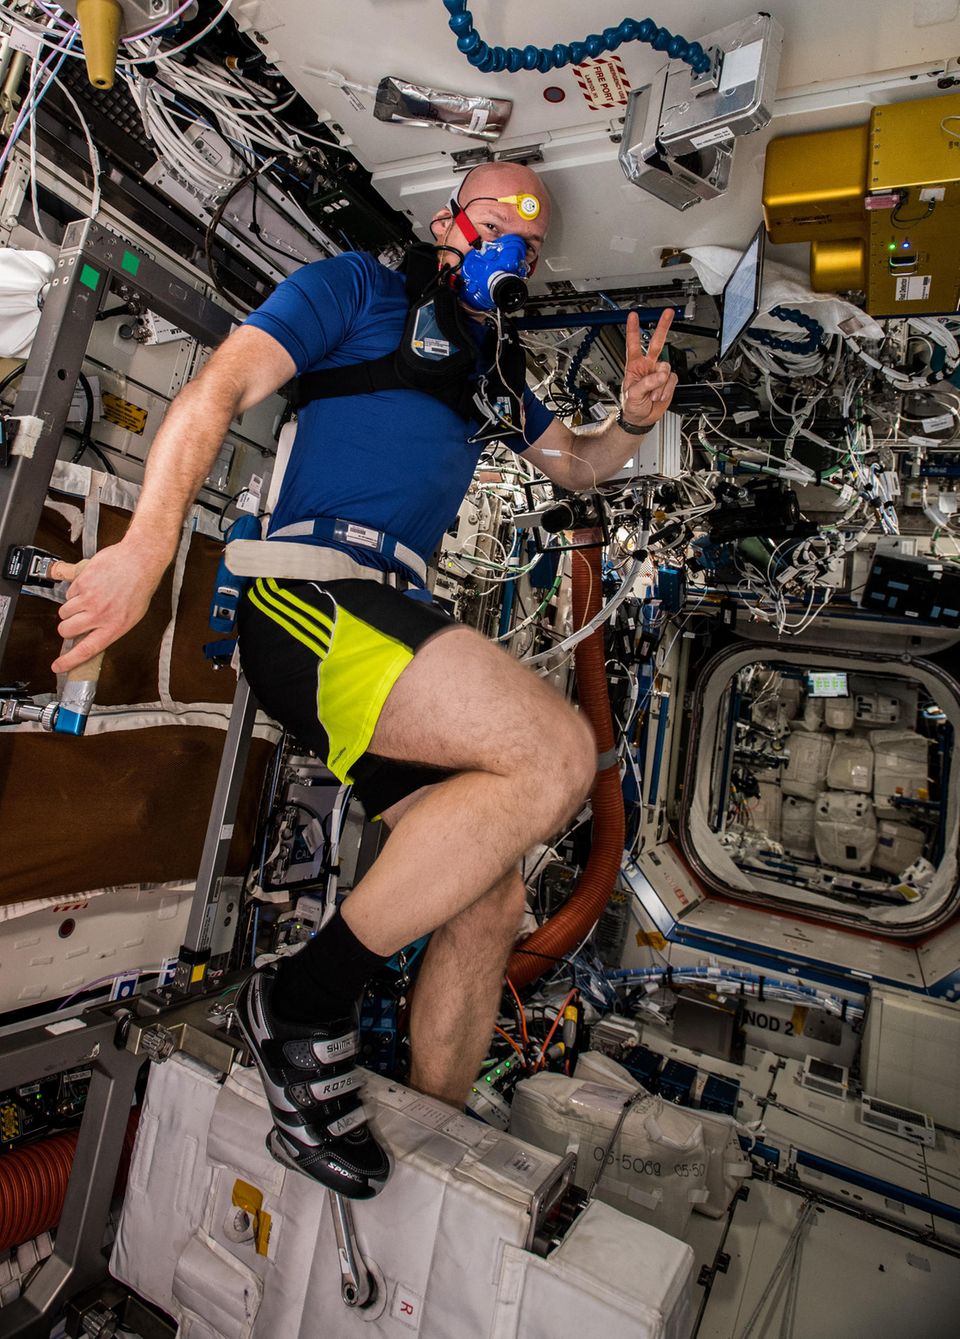 Alexander Gerst trainiert auf der ISS